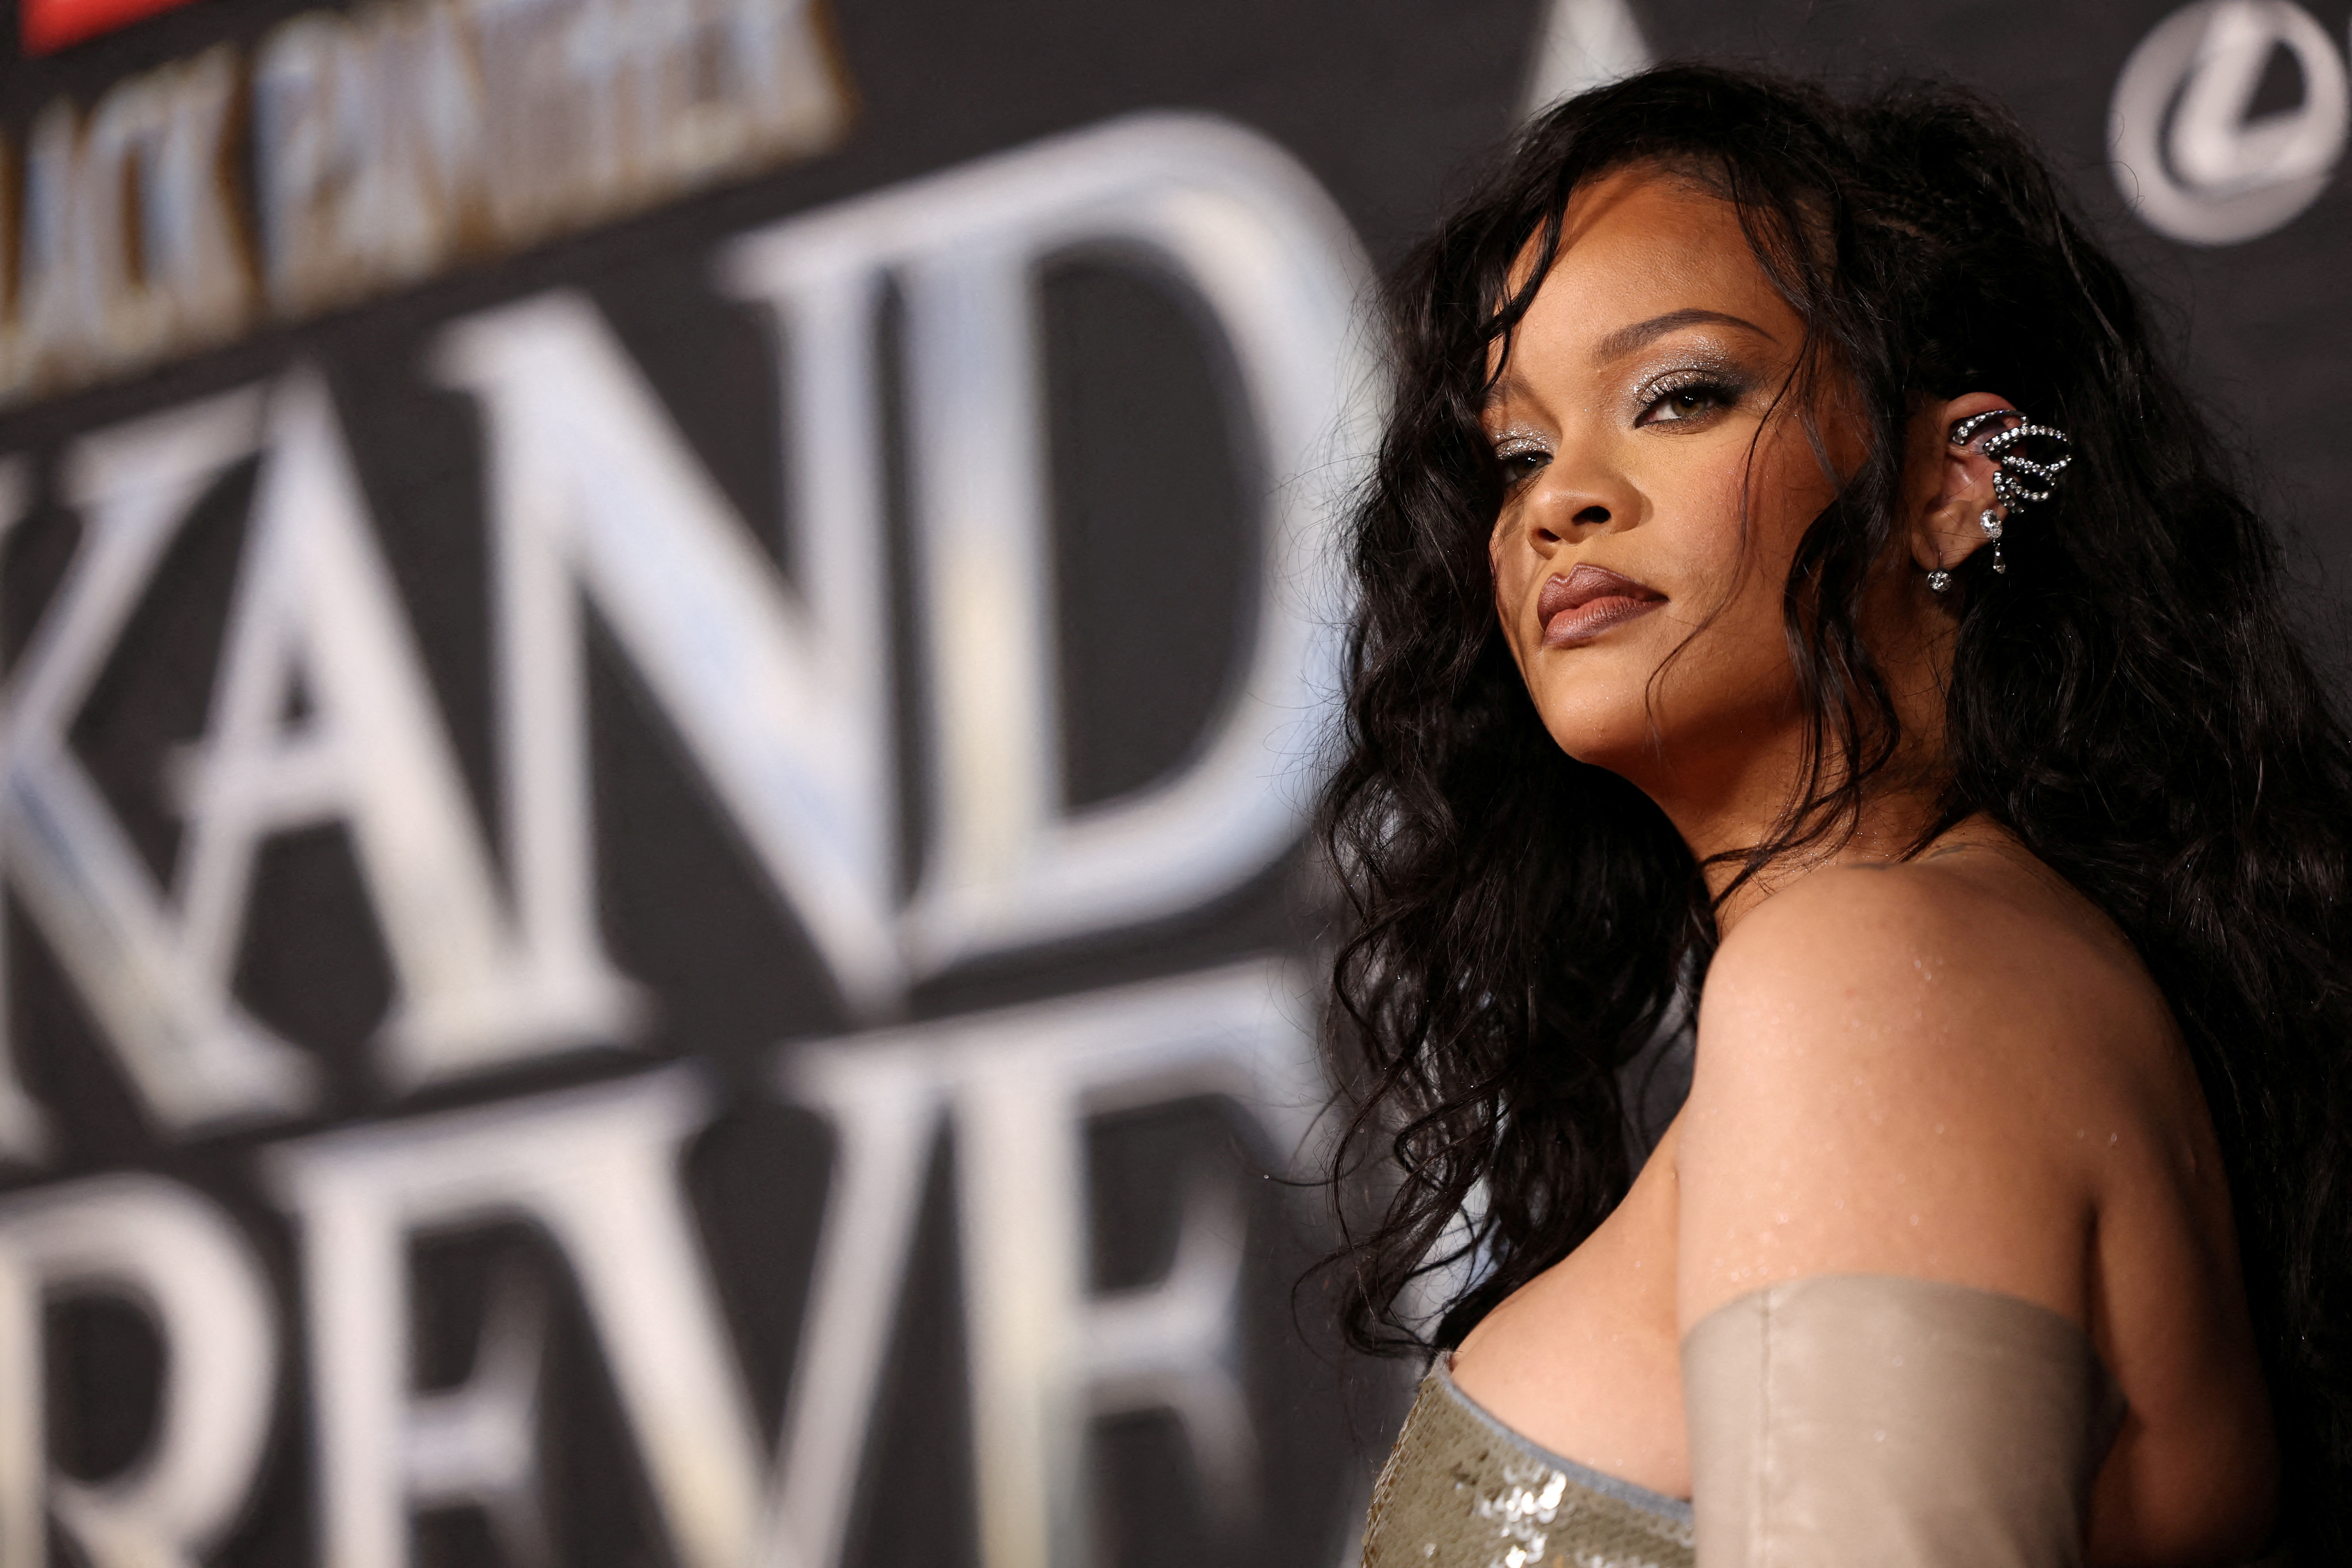 La cantante Rihanna será la encargada de animar el evento de medio tiempo, para algunos más o tan importante como el propio juego. (REUTERS/Mario Anzuoni/File Photo)